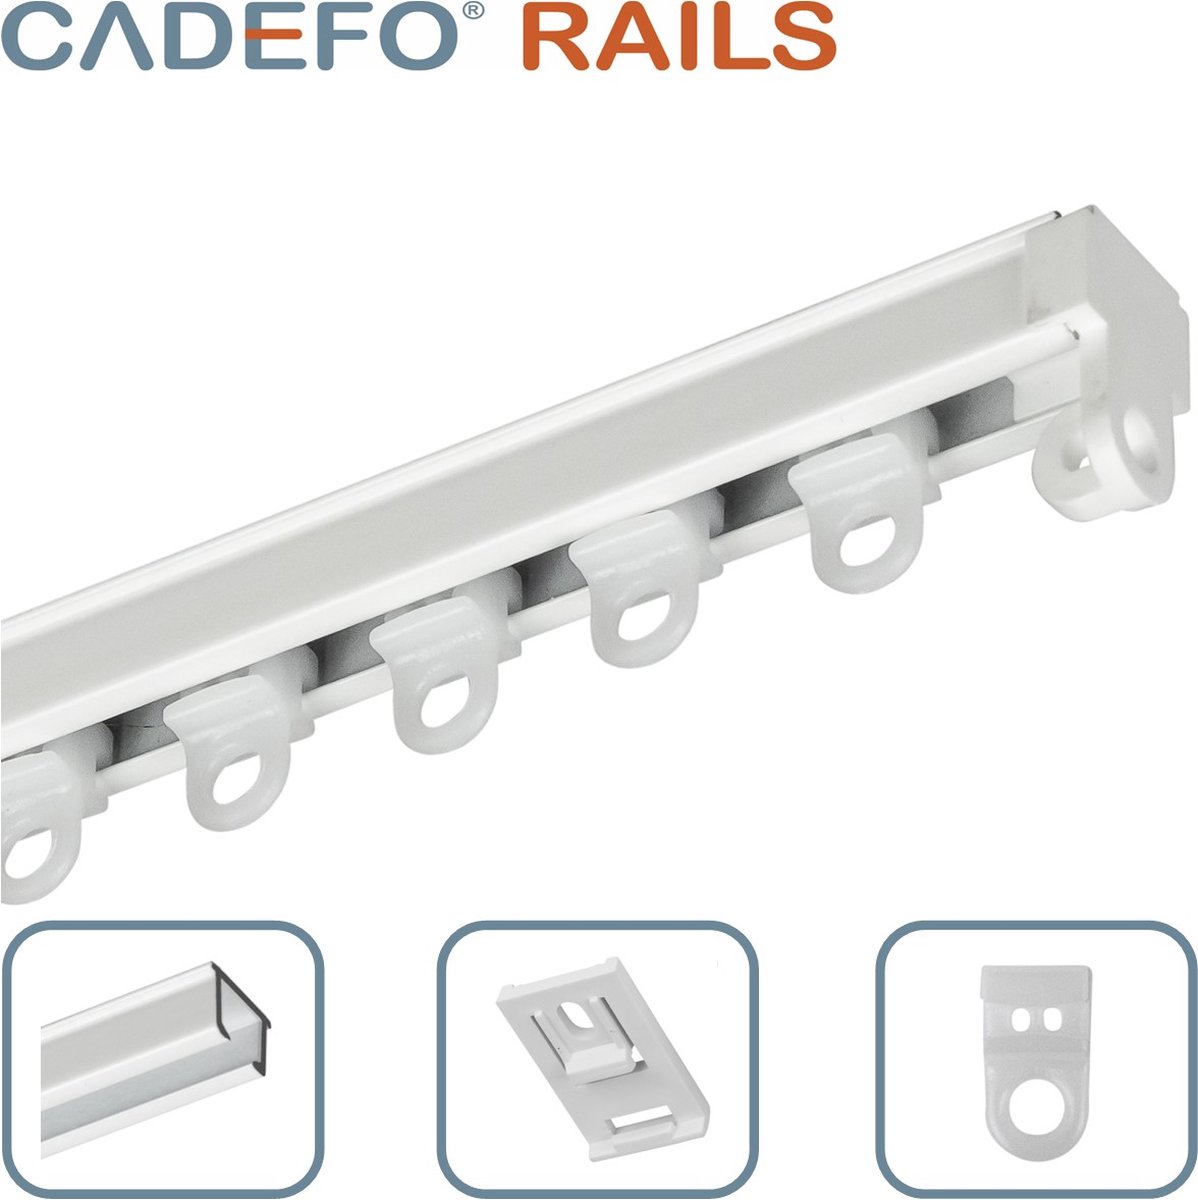 CADEFO RAILS (351 - 400 cm) Gordijnrails - Compleet op maat! - UIT 1 STUK - Leverbaar tot 6 meter - Plafondbevestiging - Lengte 381 cm